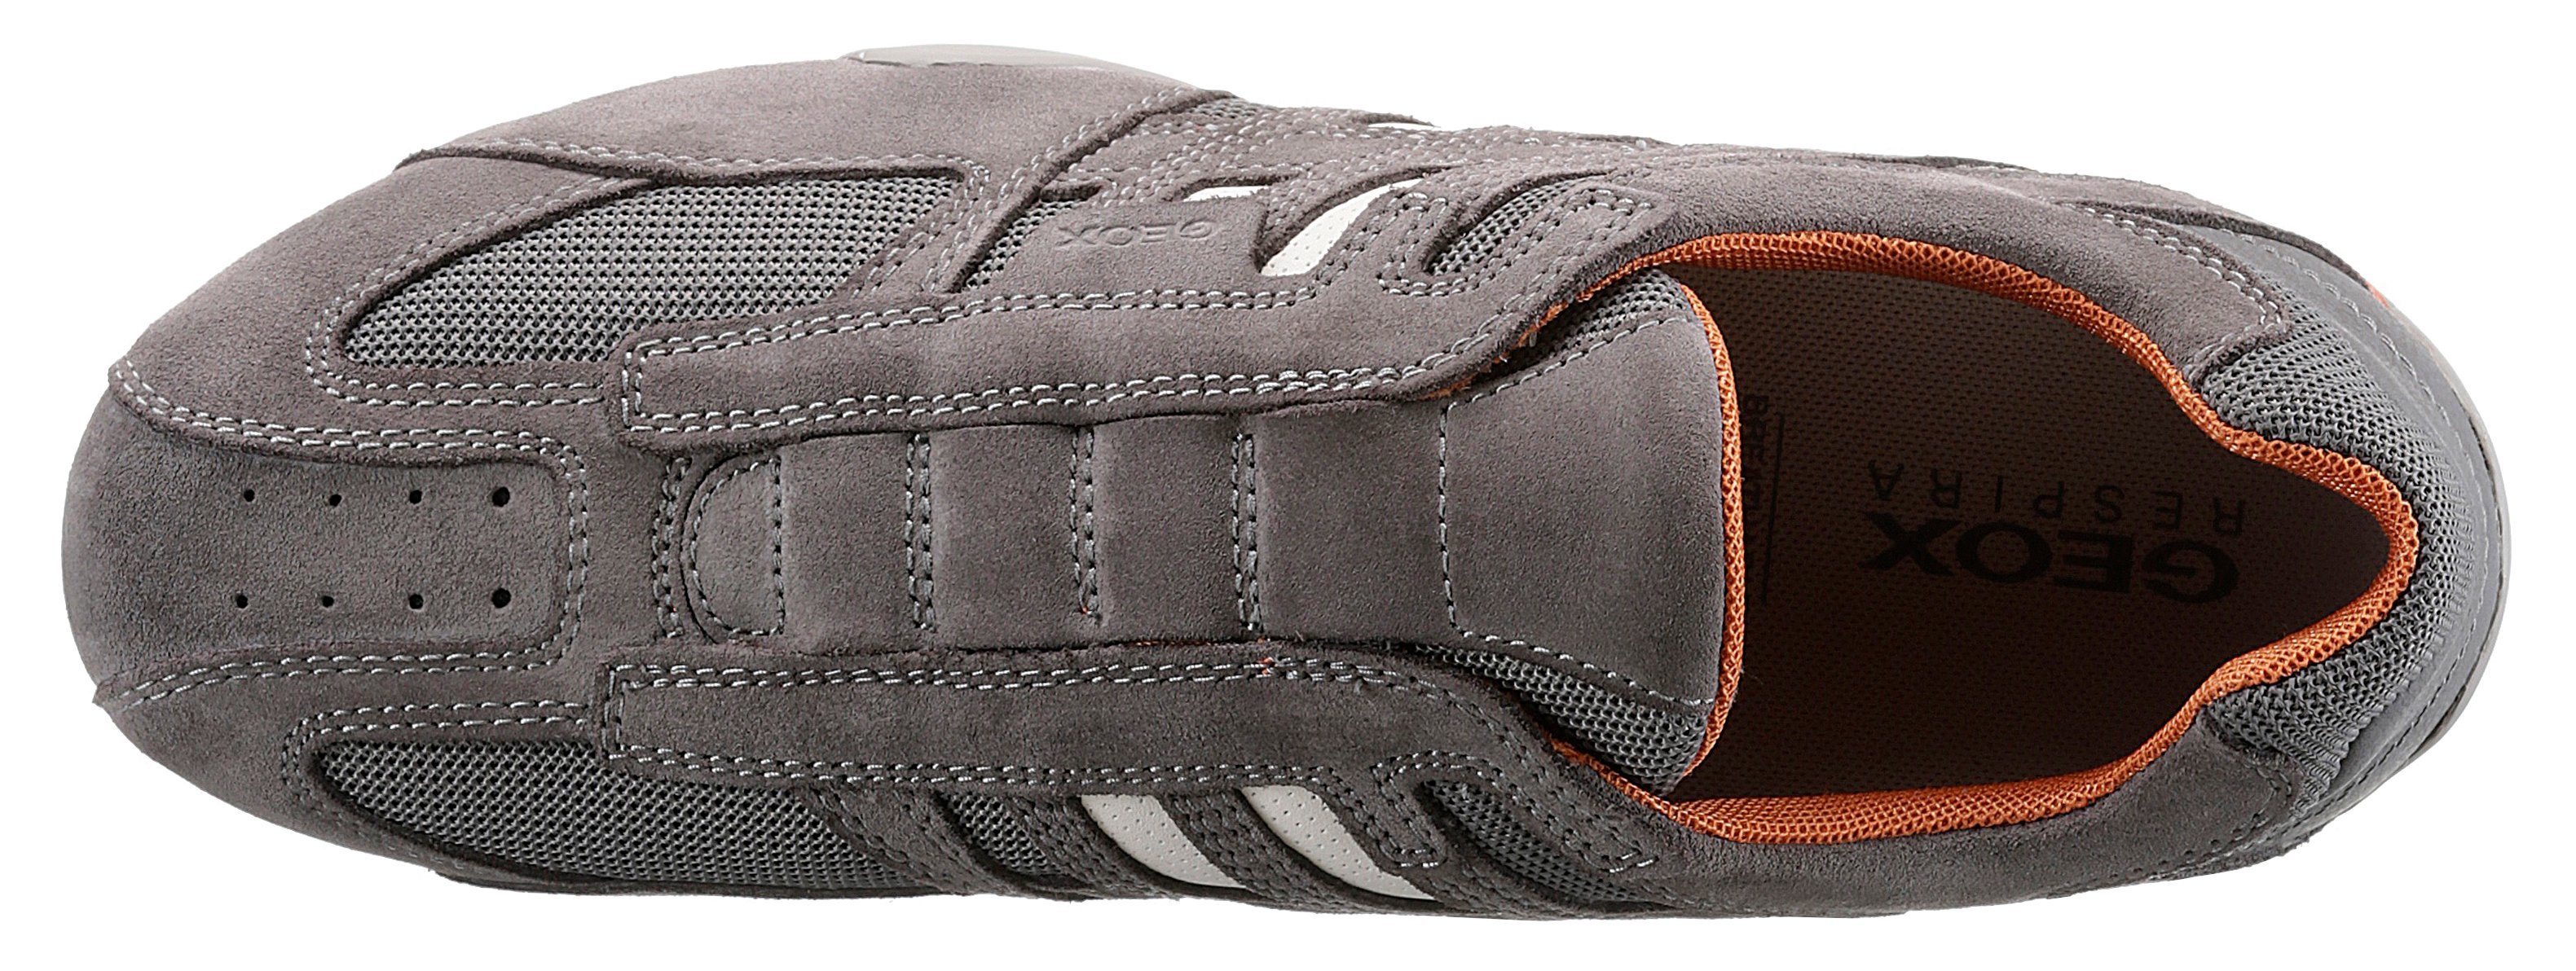 Geox UOMO SNAKE kombiniert Spezial Ziernähten und Sneaker Slip-On modischen Geox mit mit hellgrau, Membrane